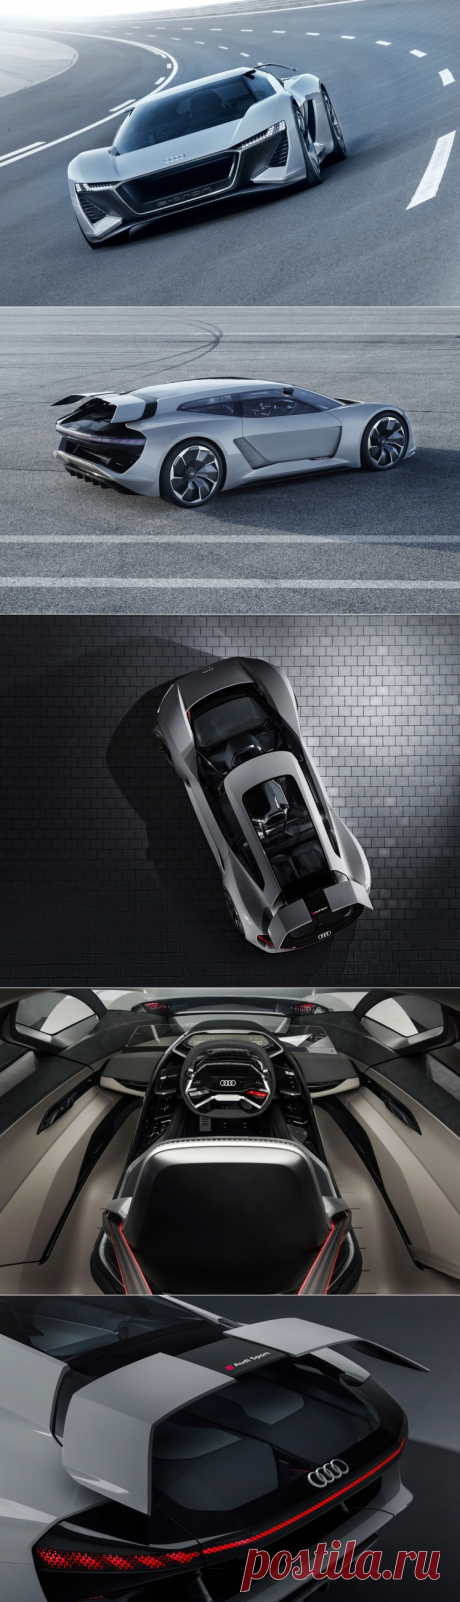 Audi PB18 e-tron – высокопроизводительный концептуальный спорткар